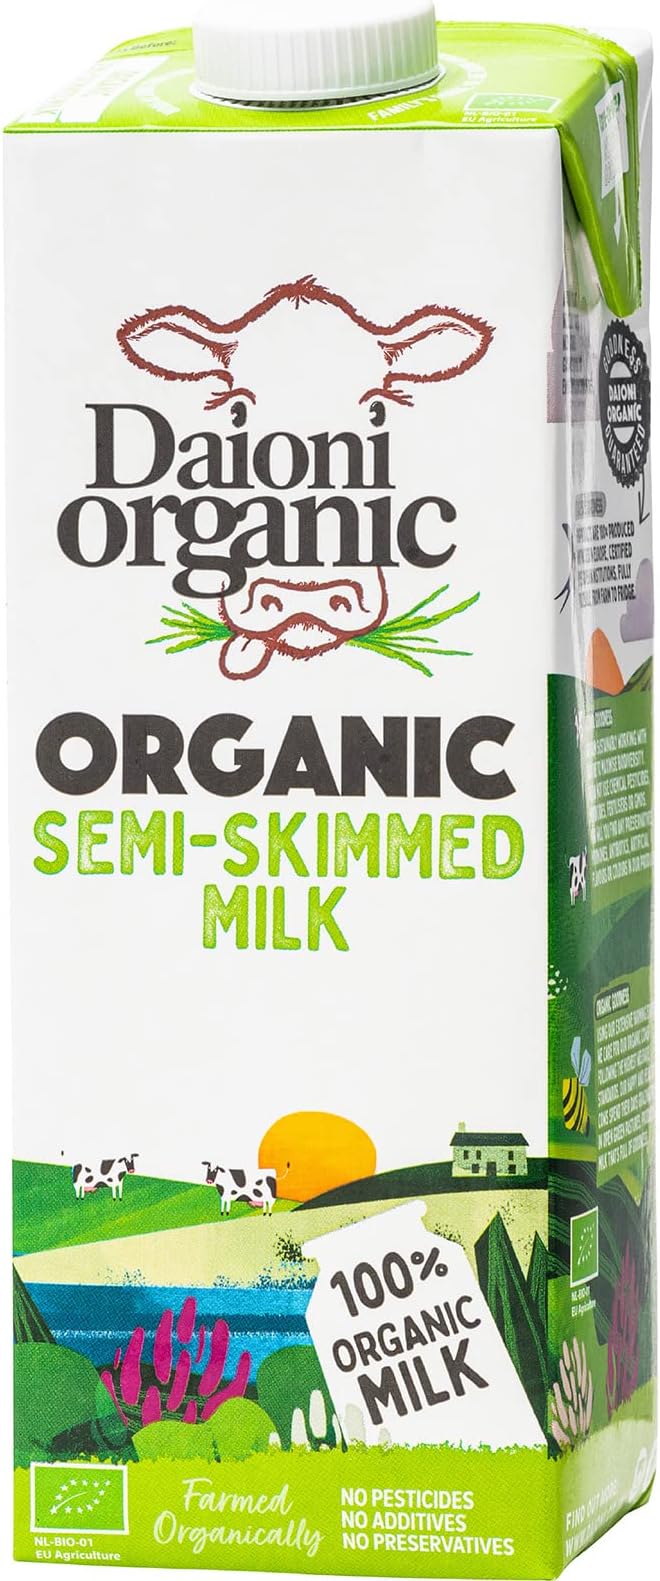 DAIONI ORGANIC Semi Skimmed Milk, 1L - Organic, Natural